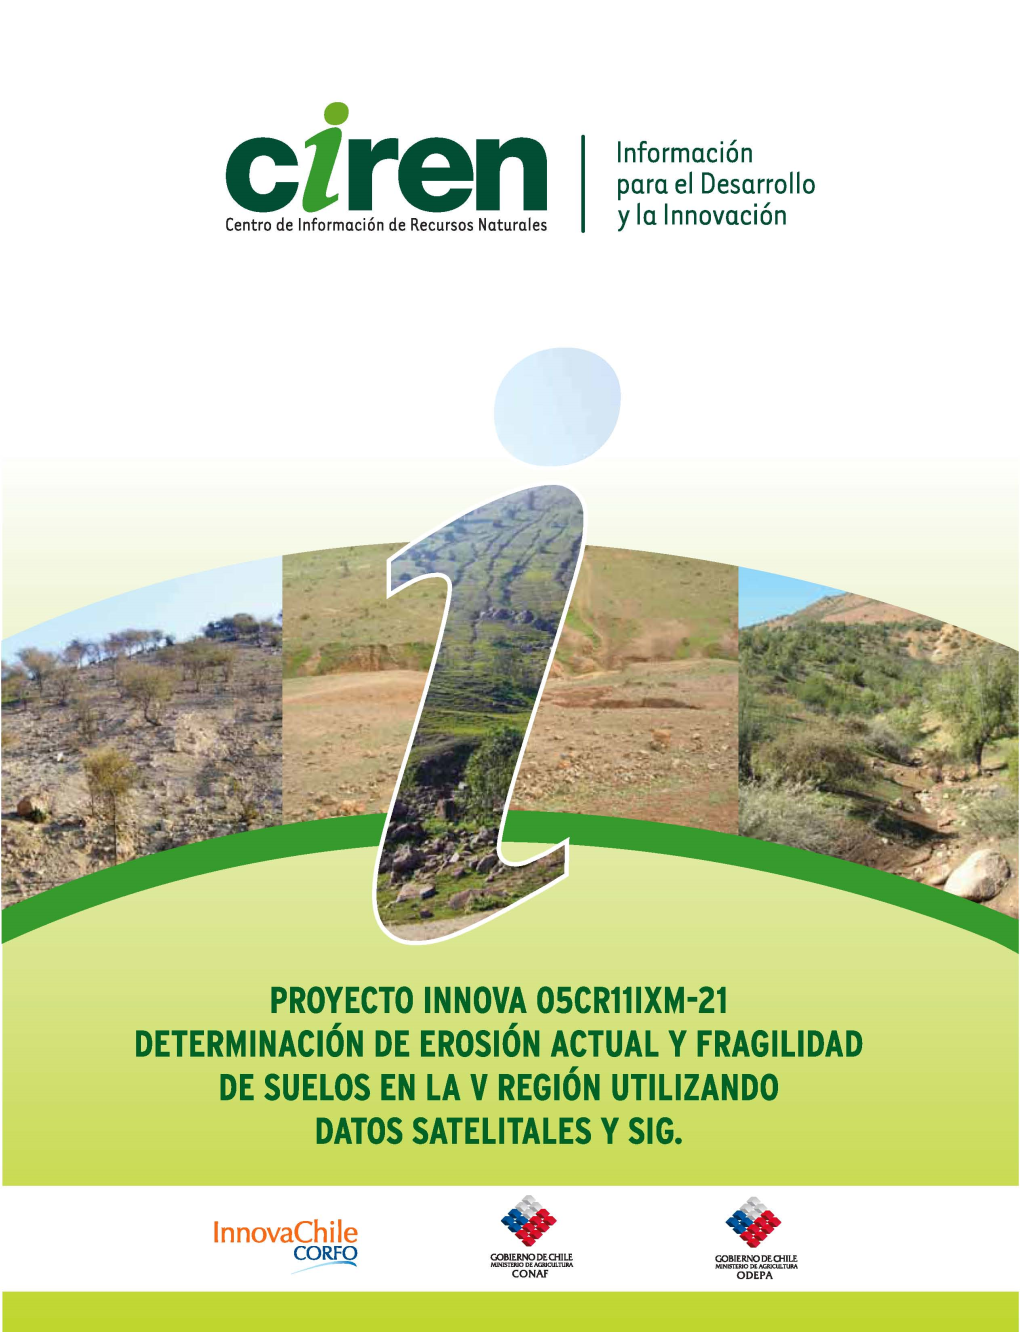 PROYECTO INNOVA OSCR11IXM-21 Determinación DE Erosión ACTUAL Y FRAGILIDAD DE SUELOS EN LA V Región UTILIZANDO DATOS SATELITALES Y SIG